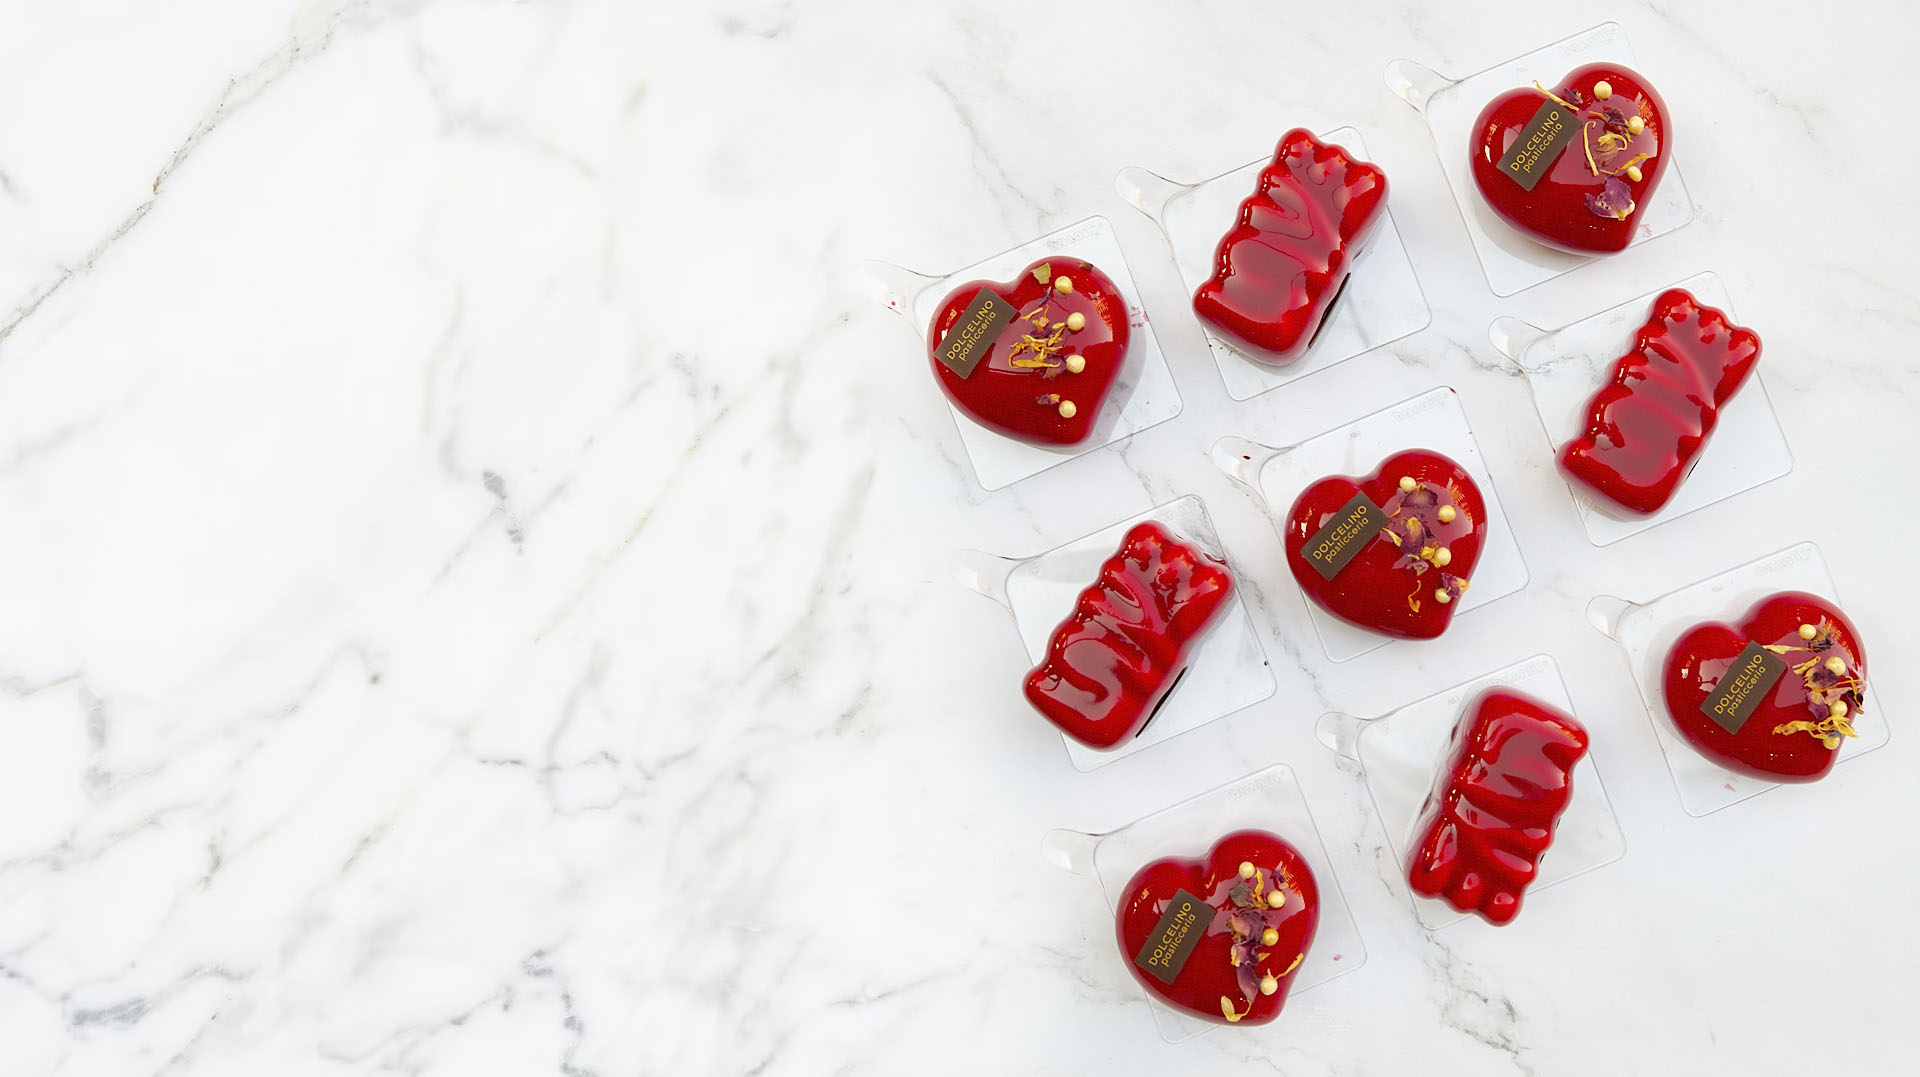 aImmergiti nell'amore con la nostra esclusiva collezione di cioccolatini di San Valentino. Ogni boccone è una dichiarazione dolce e irresistibile, avvolta in eleganti scatole che raccontano una storia d'amore.